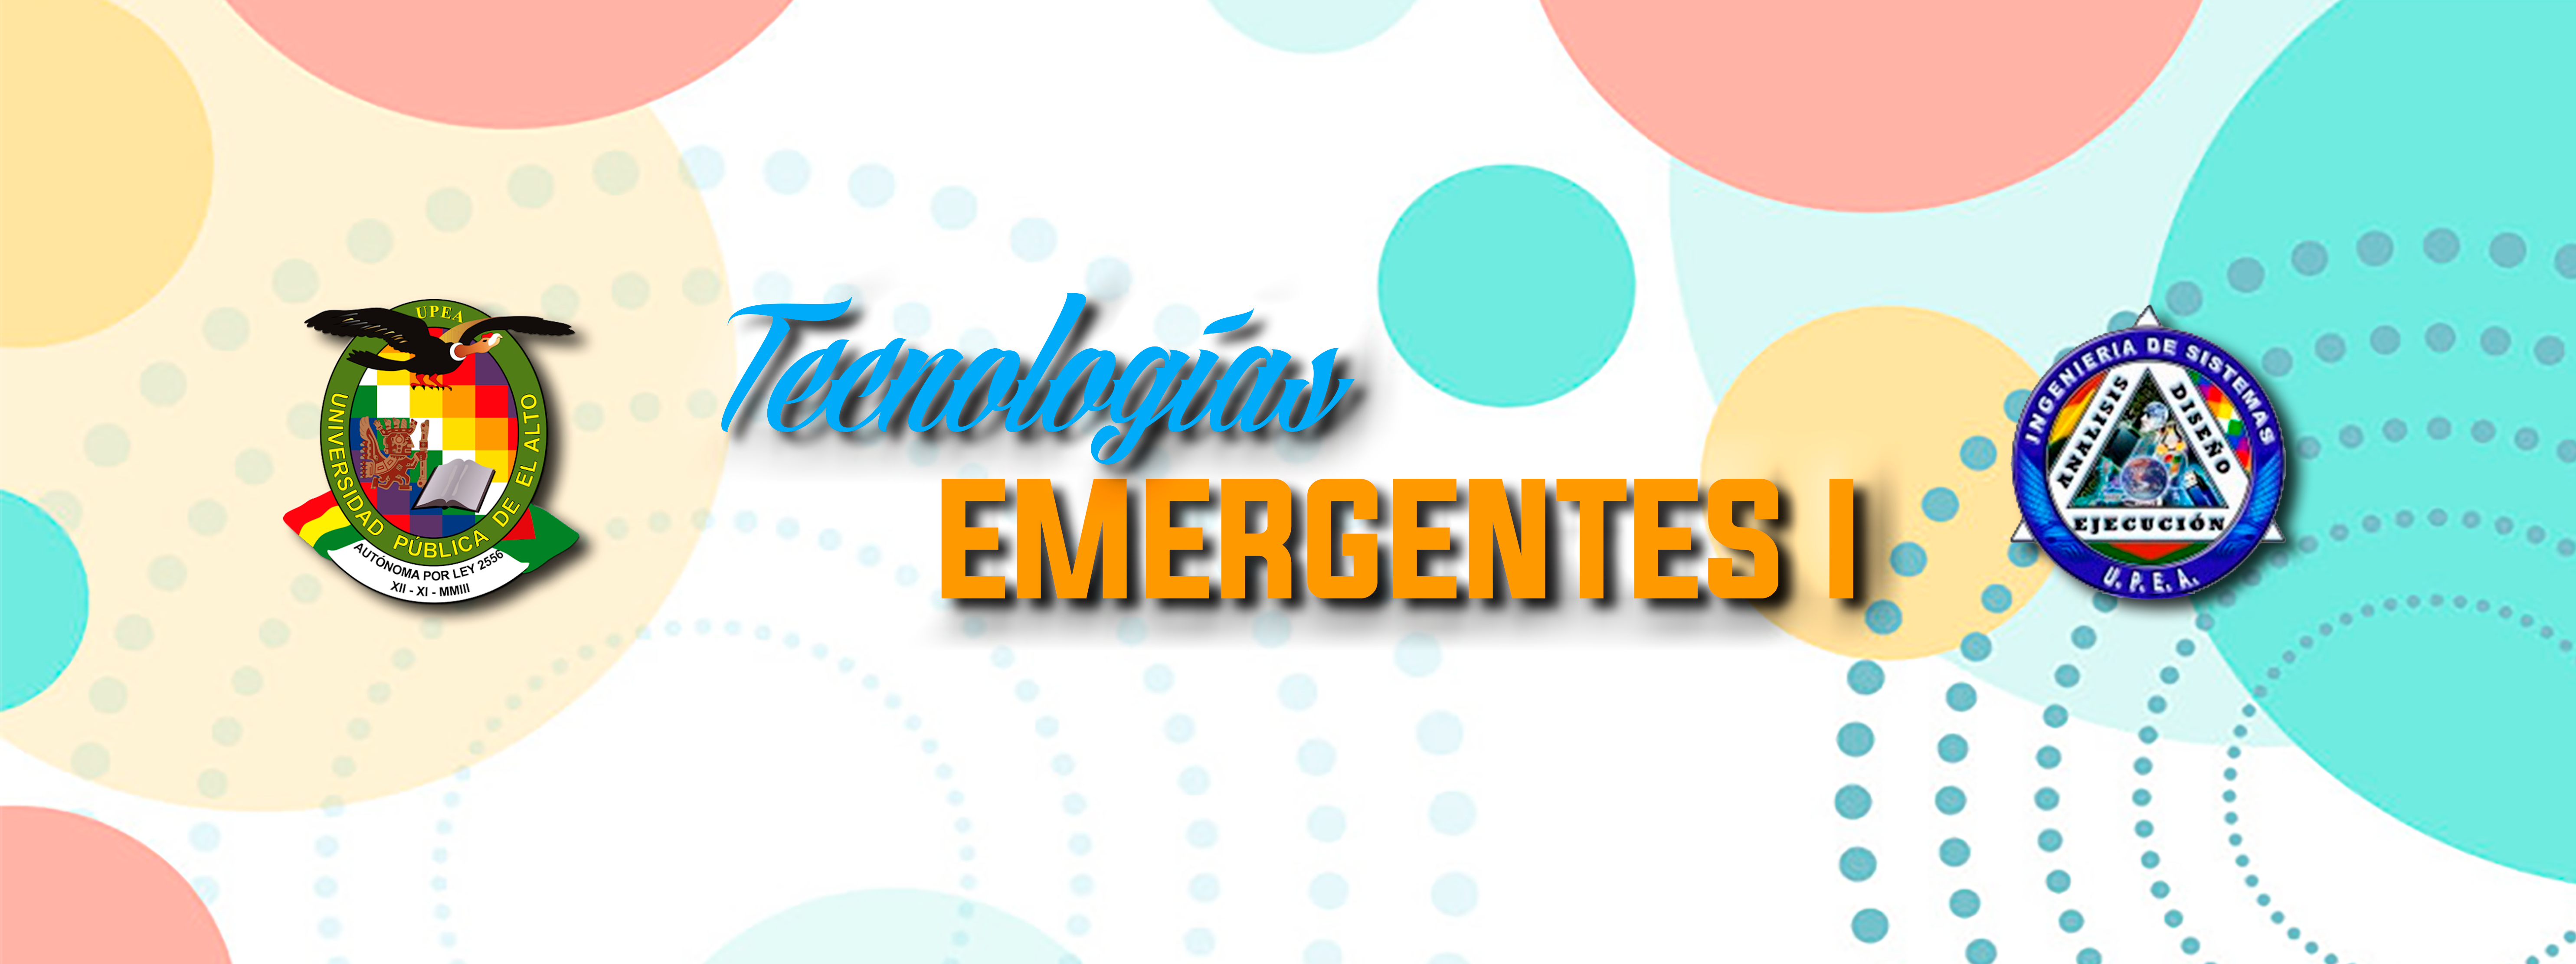 TEM-636 TECNOLOGÍAS EMERGENTES I (B) 